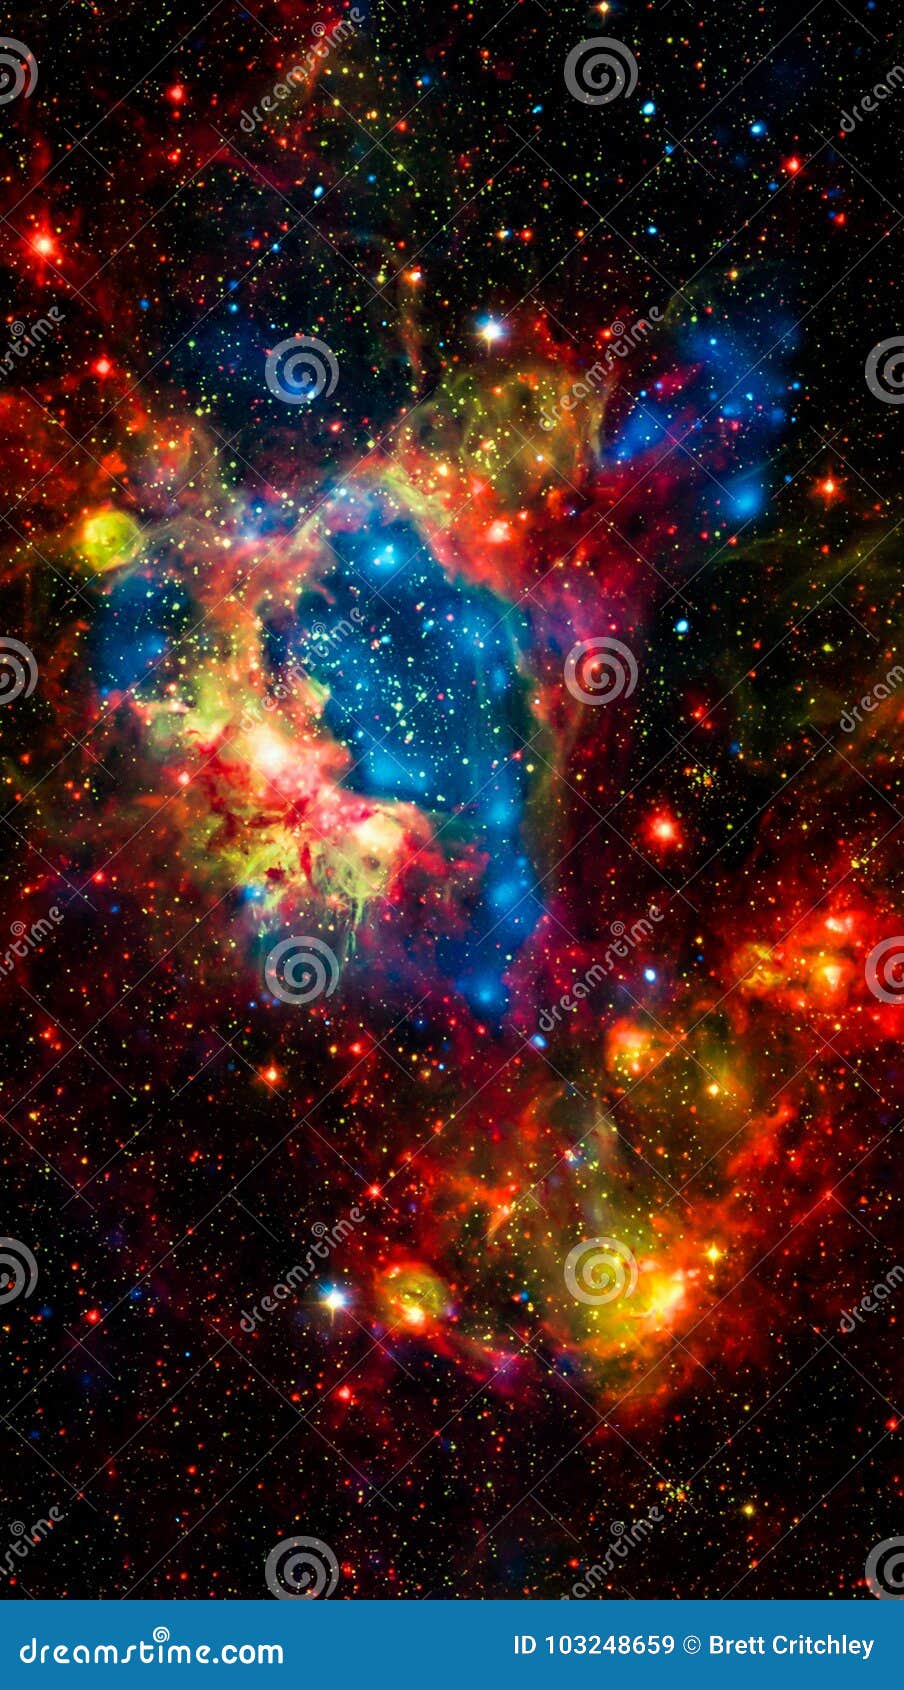 Hình nền Vũ Trụ Màu Sắc với những ngôi sao tuyệt đẹp sẽ đưa bạn trở về không gian xa xôi. Cảm thấy sự tinh tế và mạnh mẽ khi tận hưởng những khoảnh khắc tràn đầy sắc màu của vũ trụ.